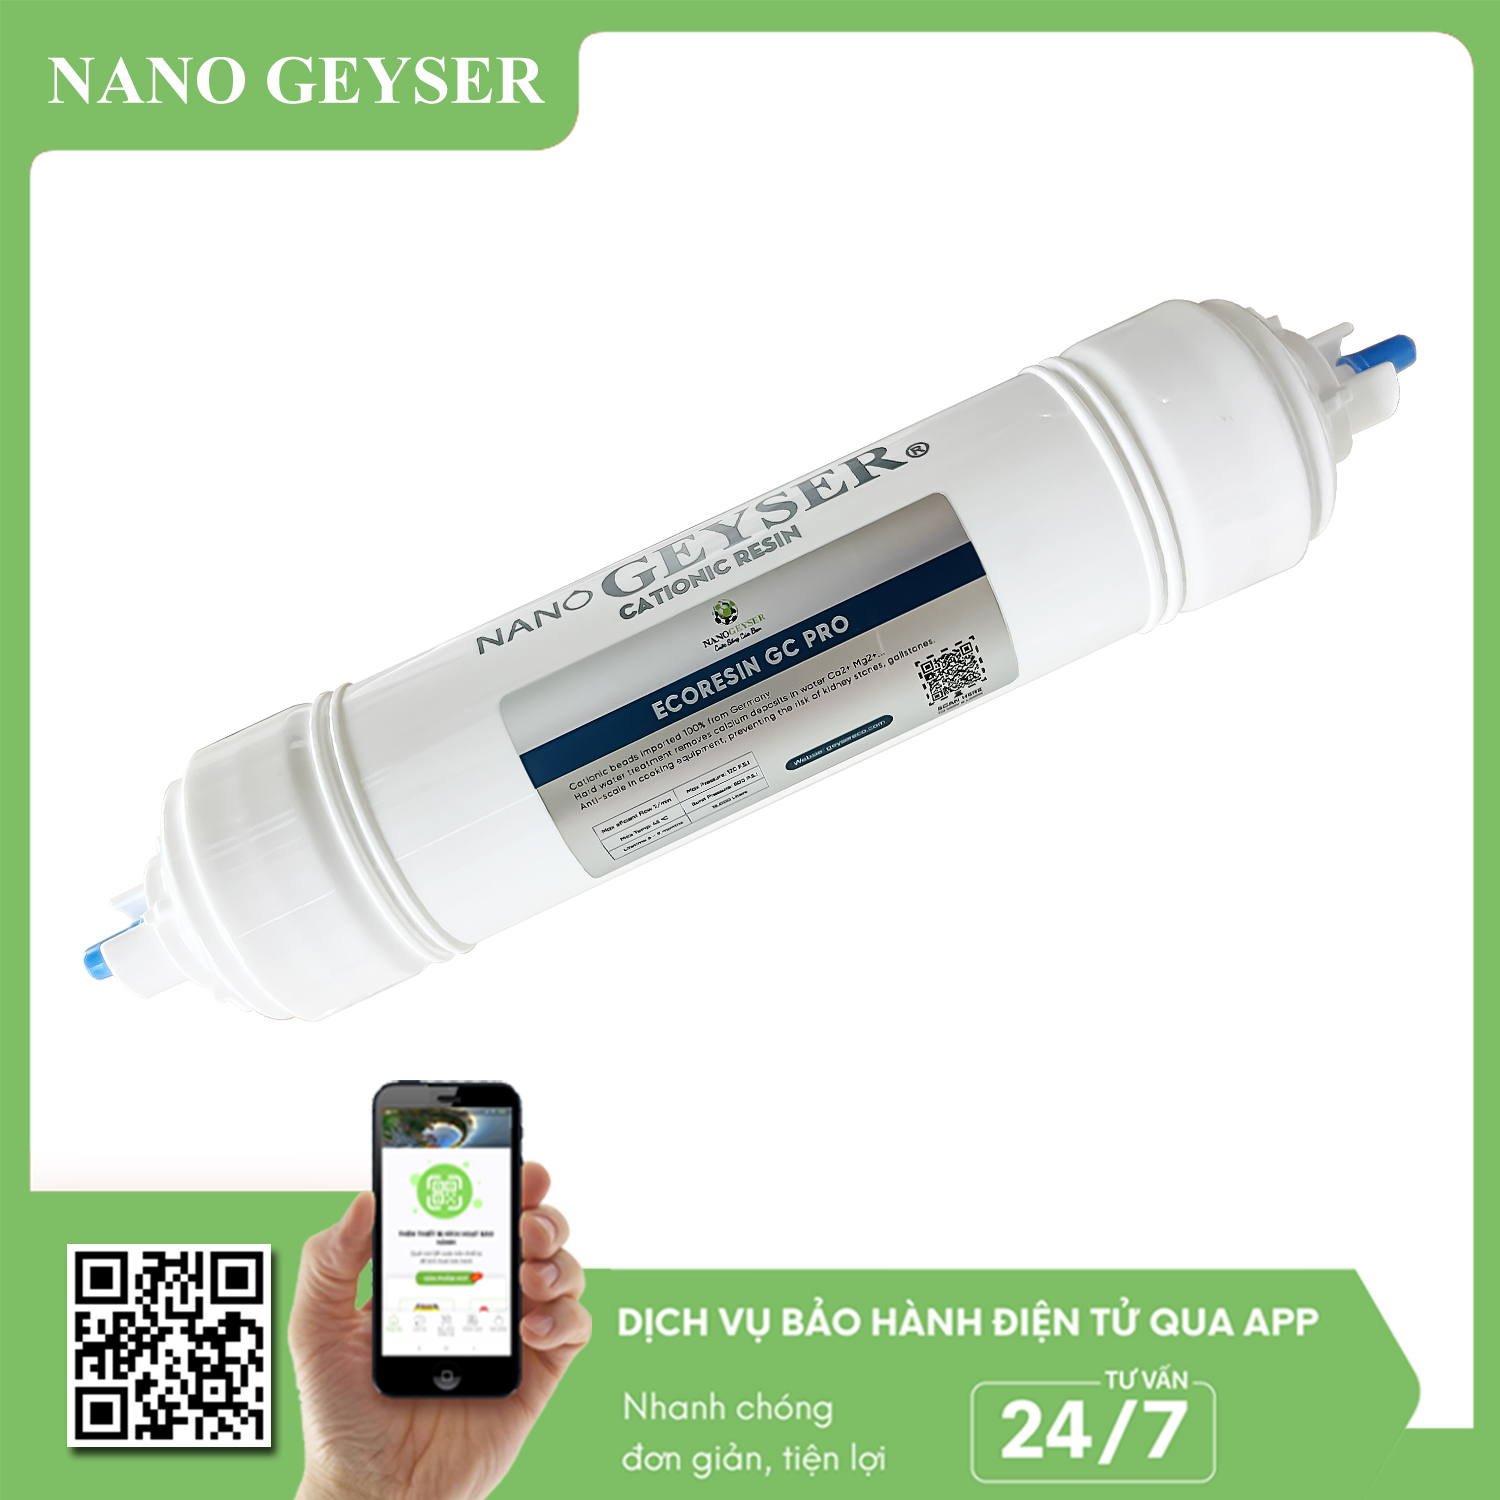 Lõi lọc nước EcoResin GC Pro Nano Geyser